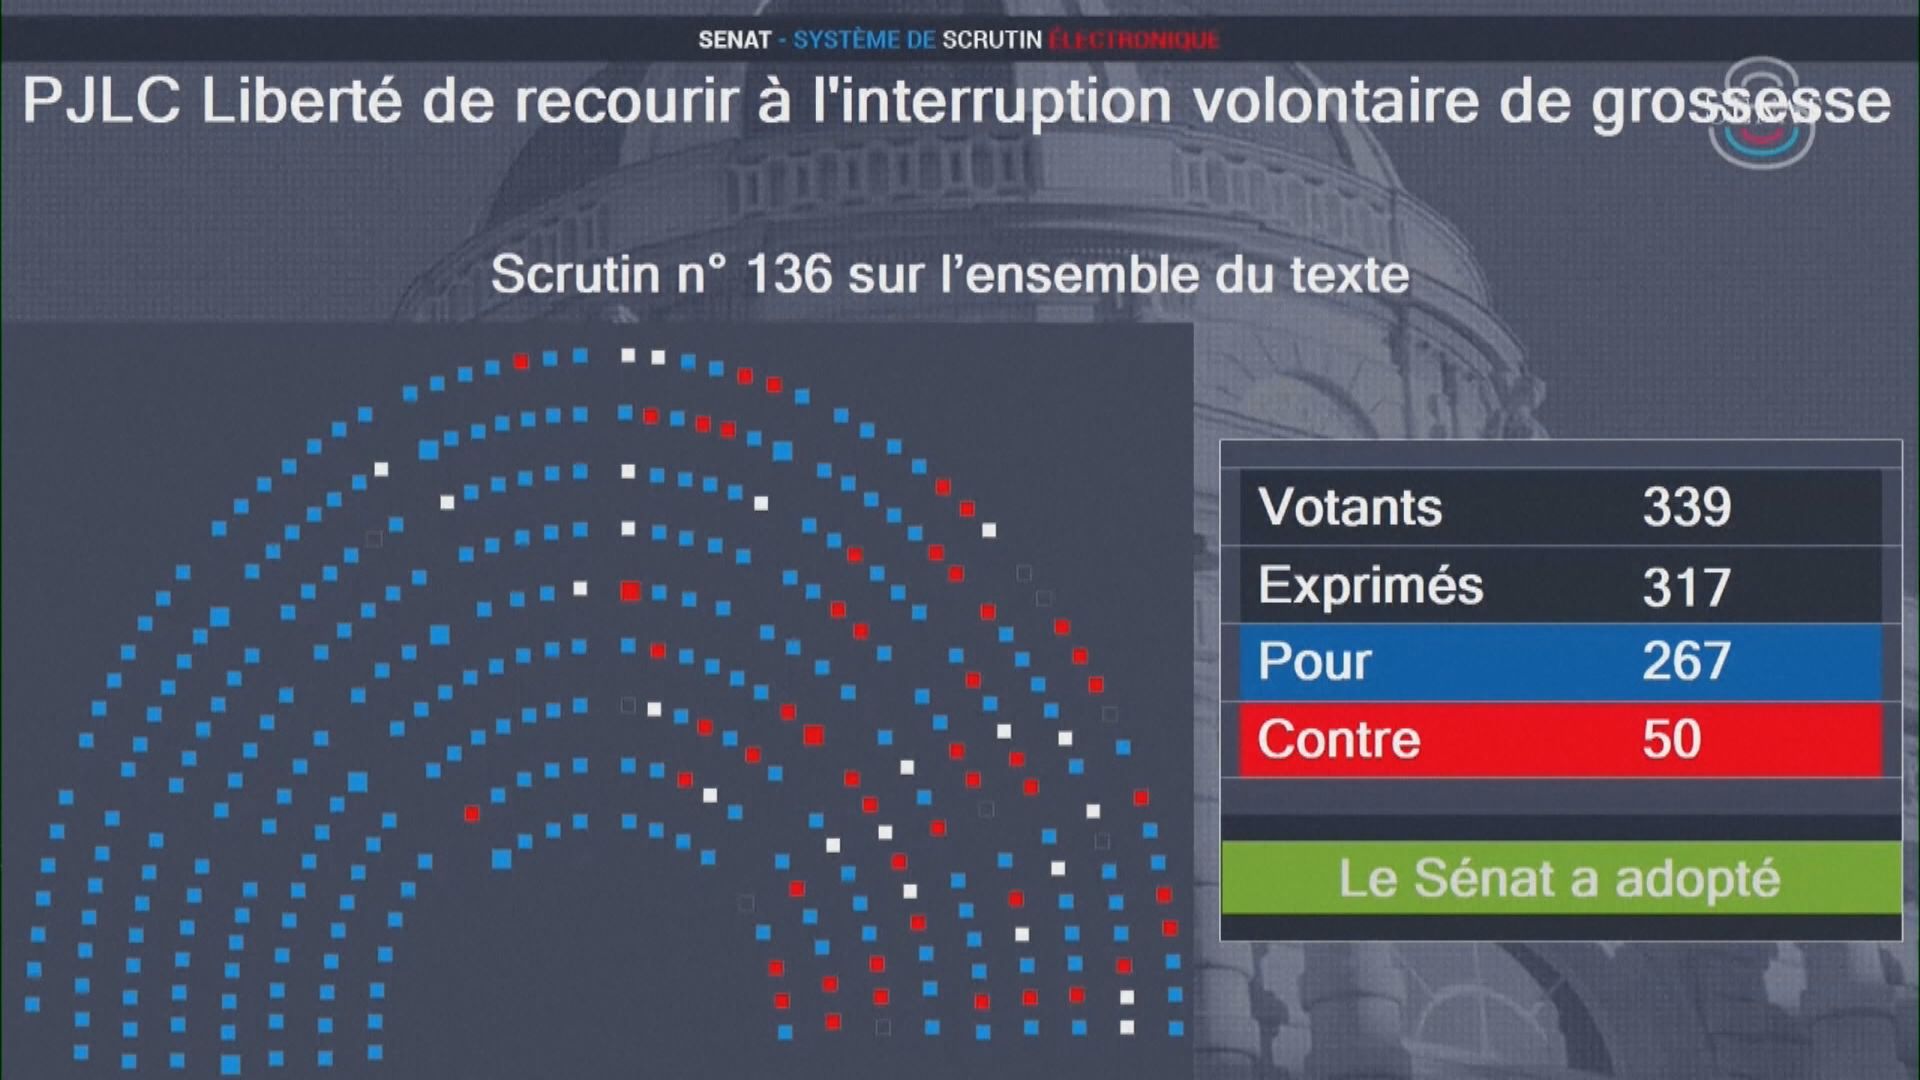 法國參議院通過將墮胎列為受憲法保障的自由